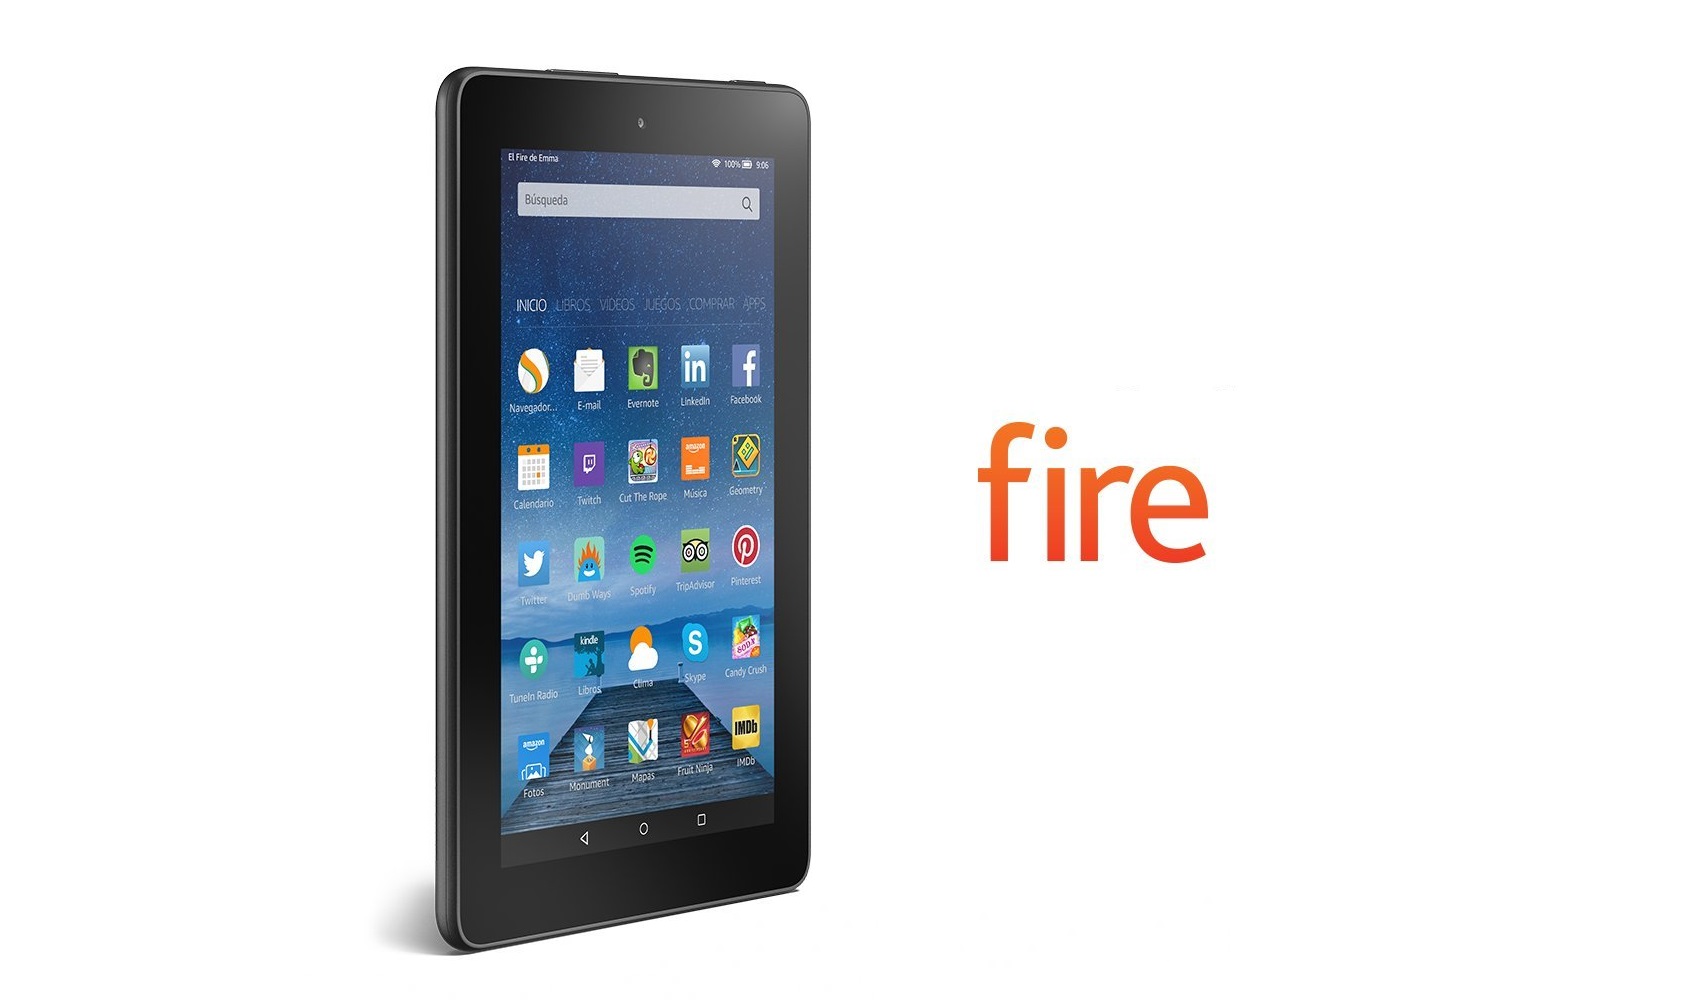 Amazon Kindle Fire